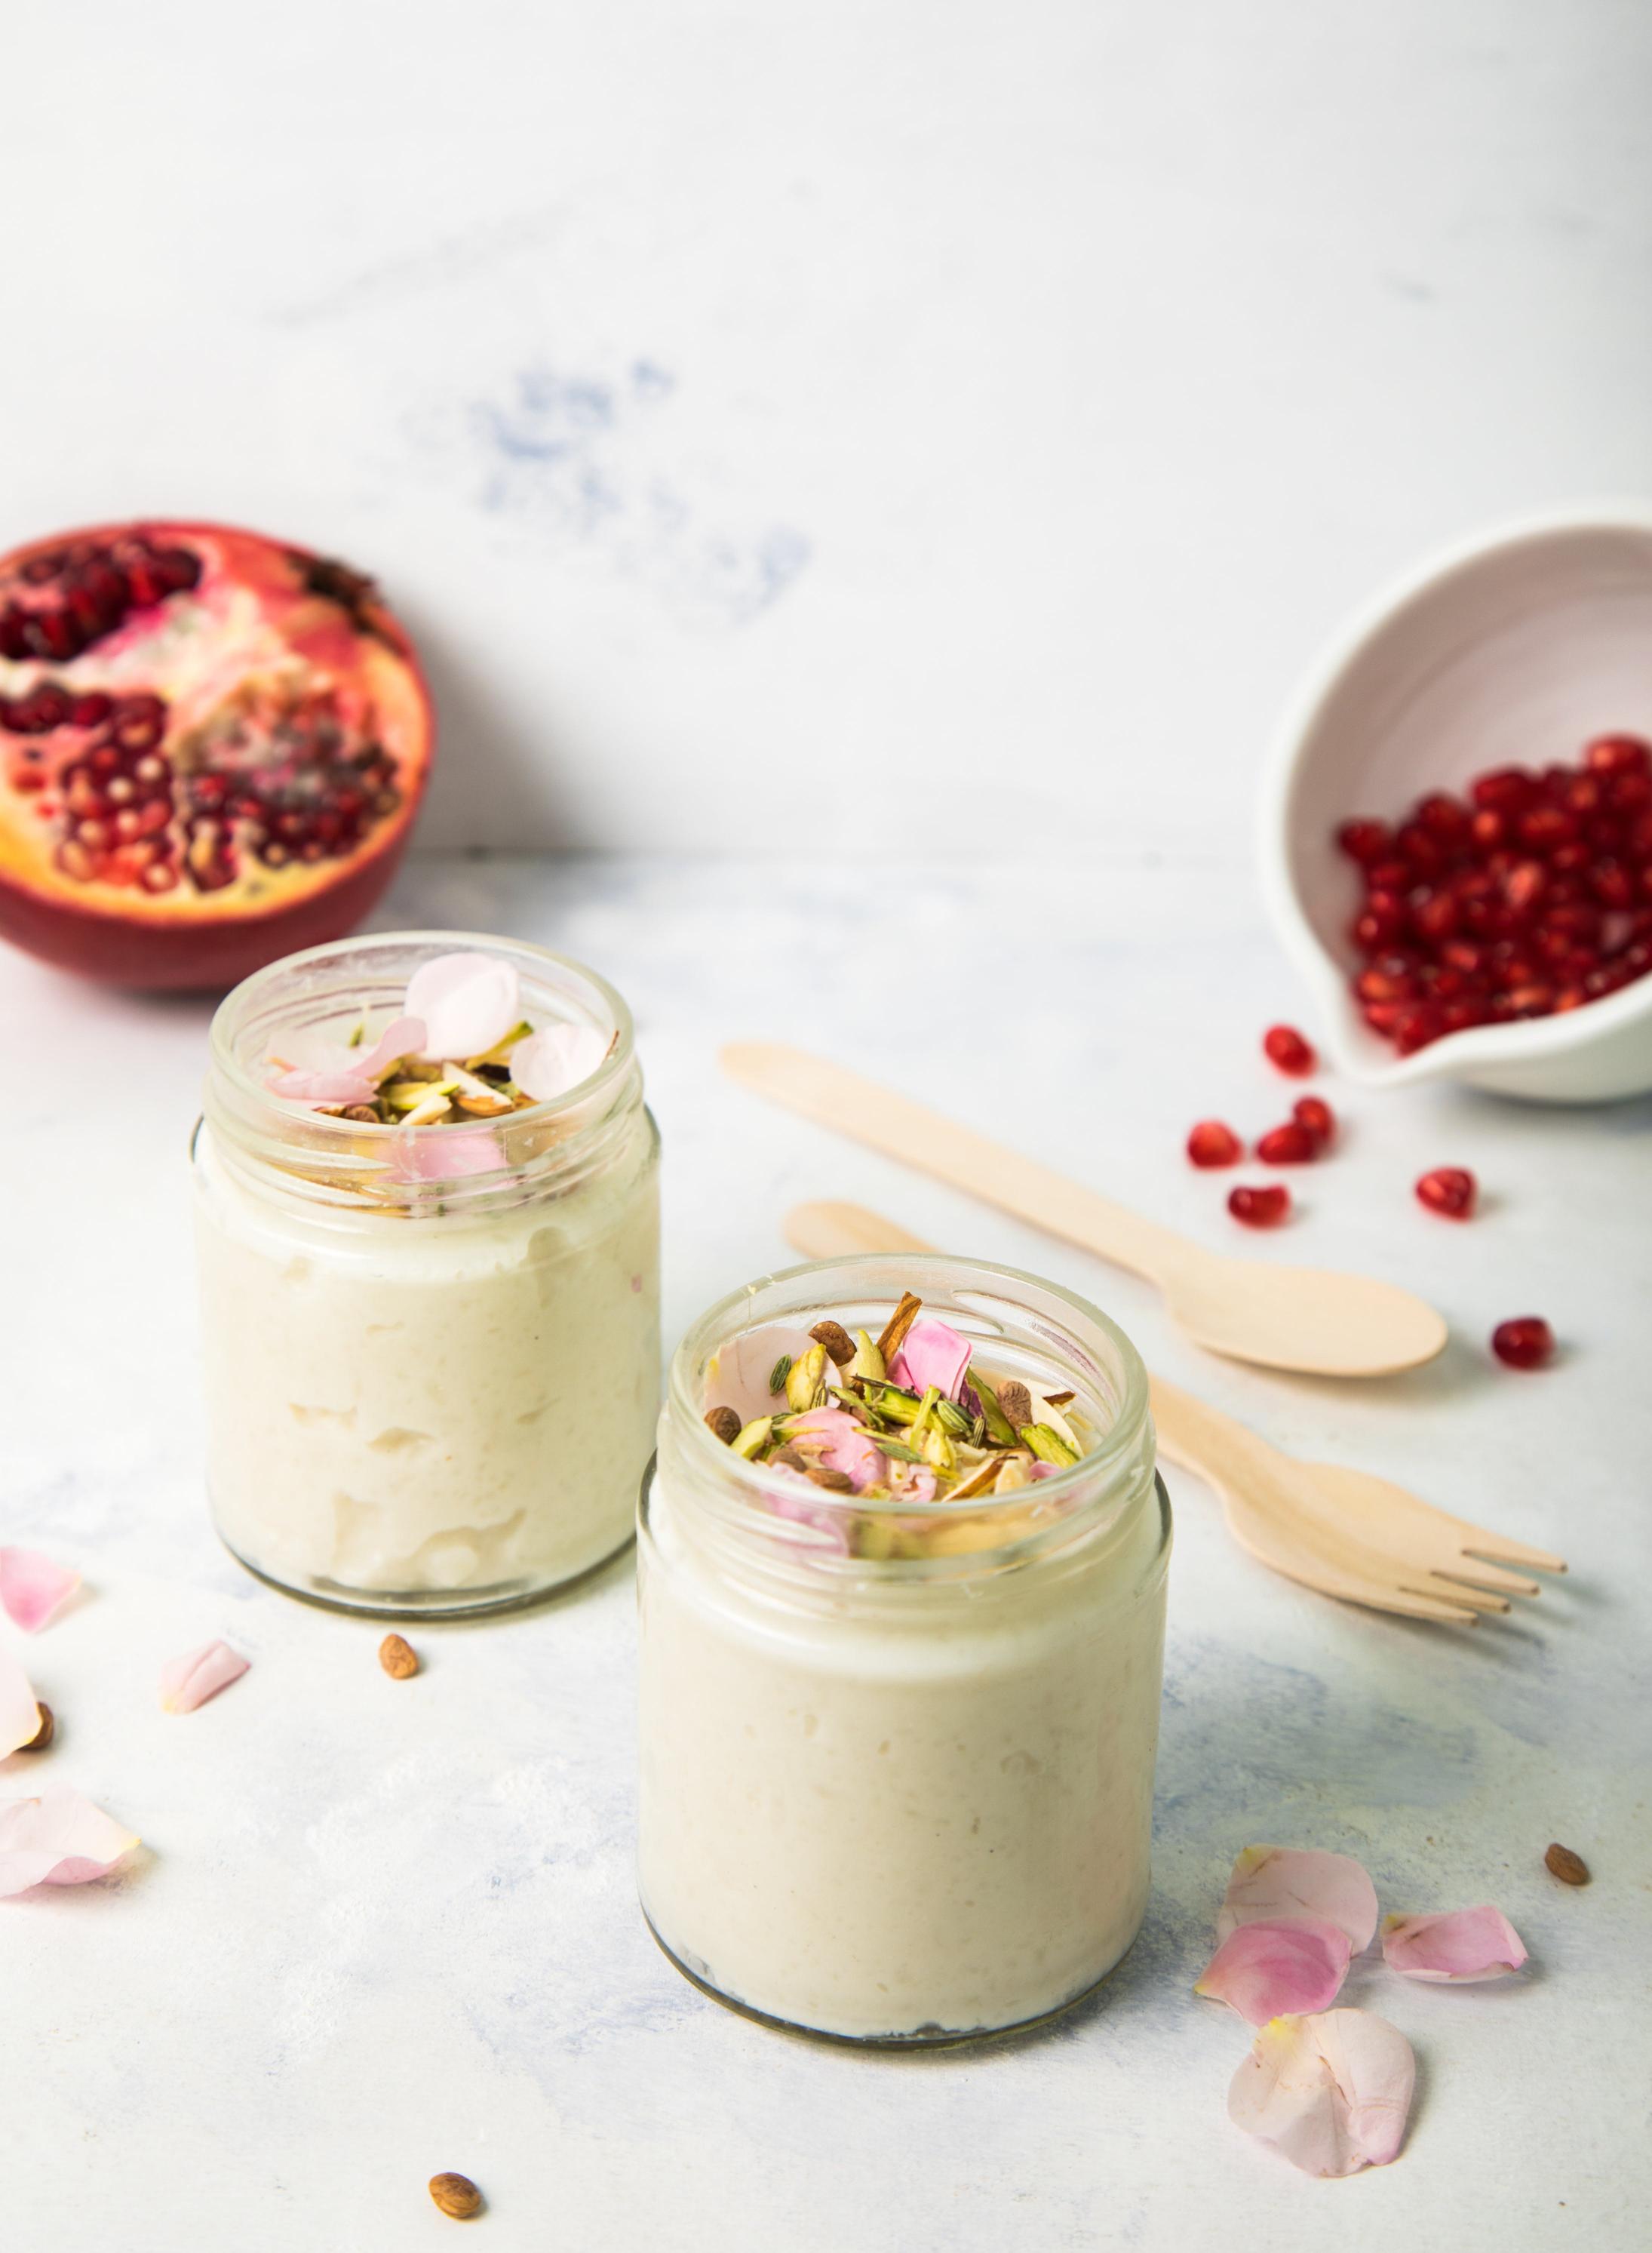 Ricette di dolci al cucchiaio: la cremosità dello yogurt incontra i sapori della frutta